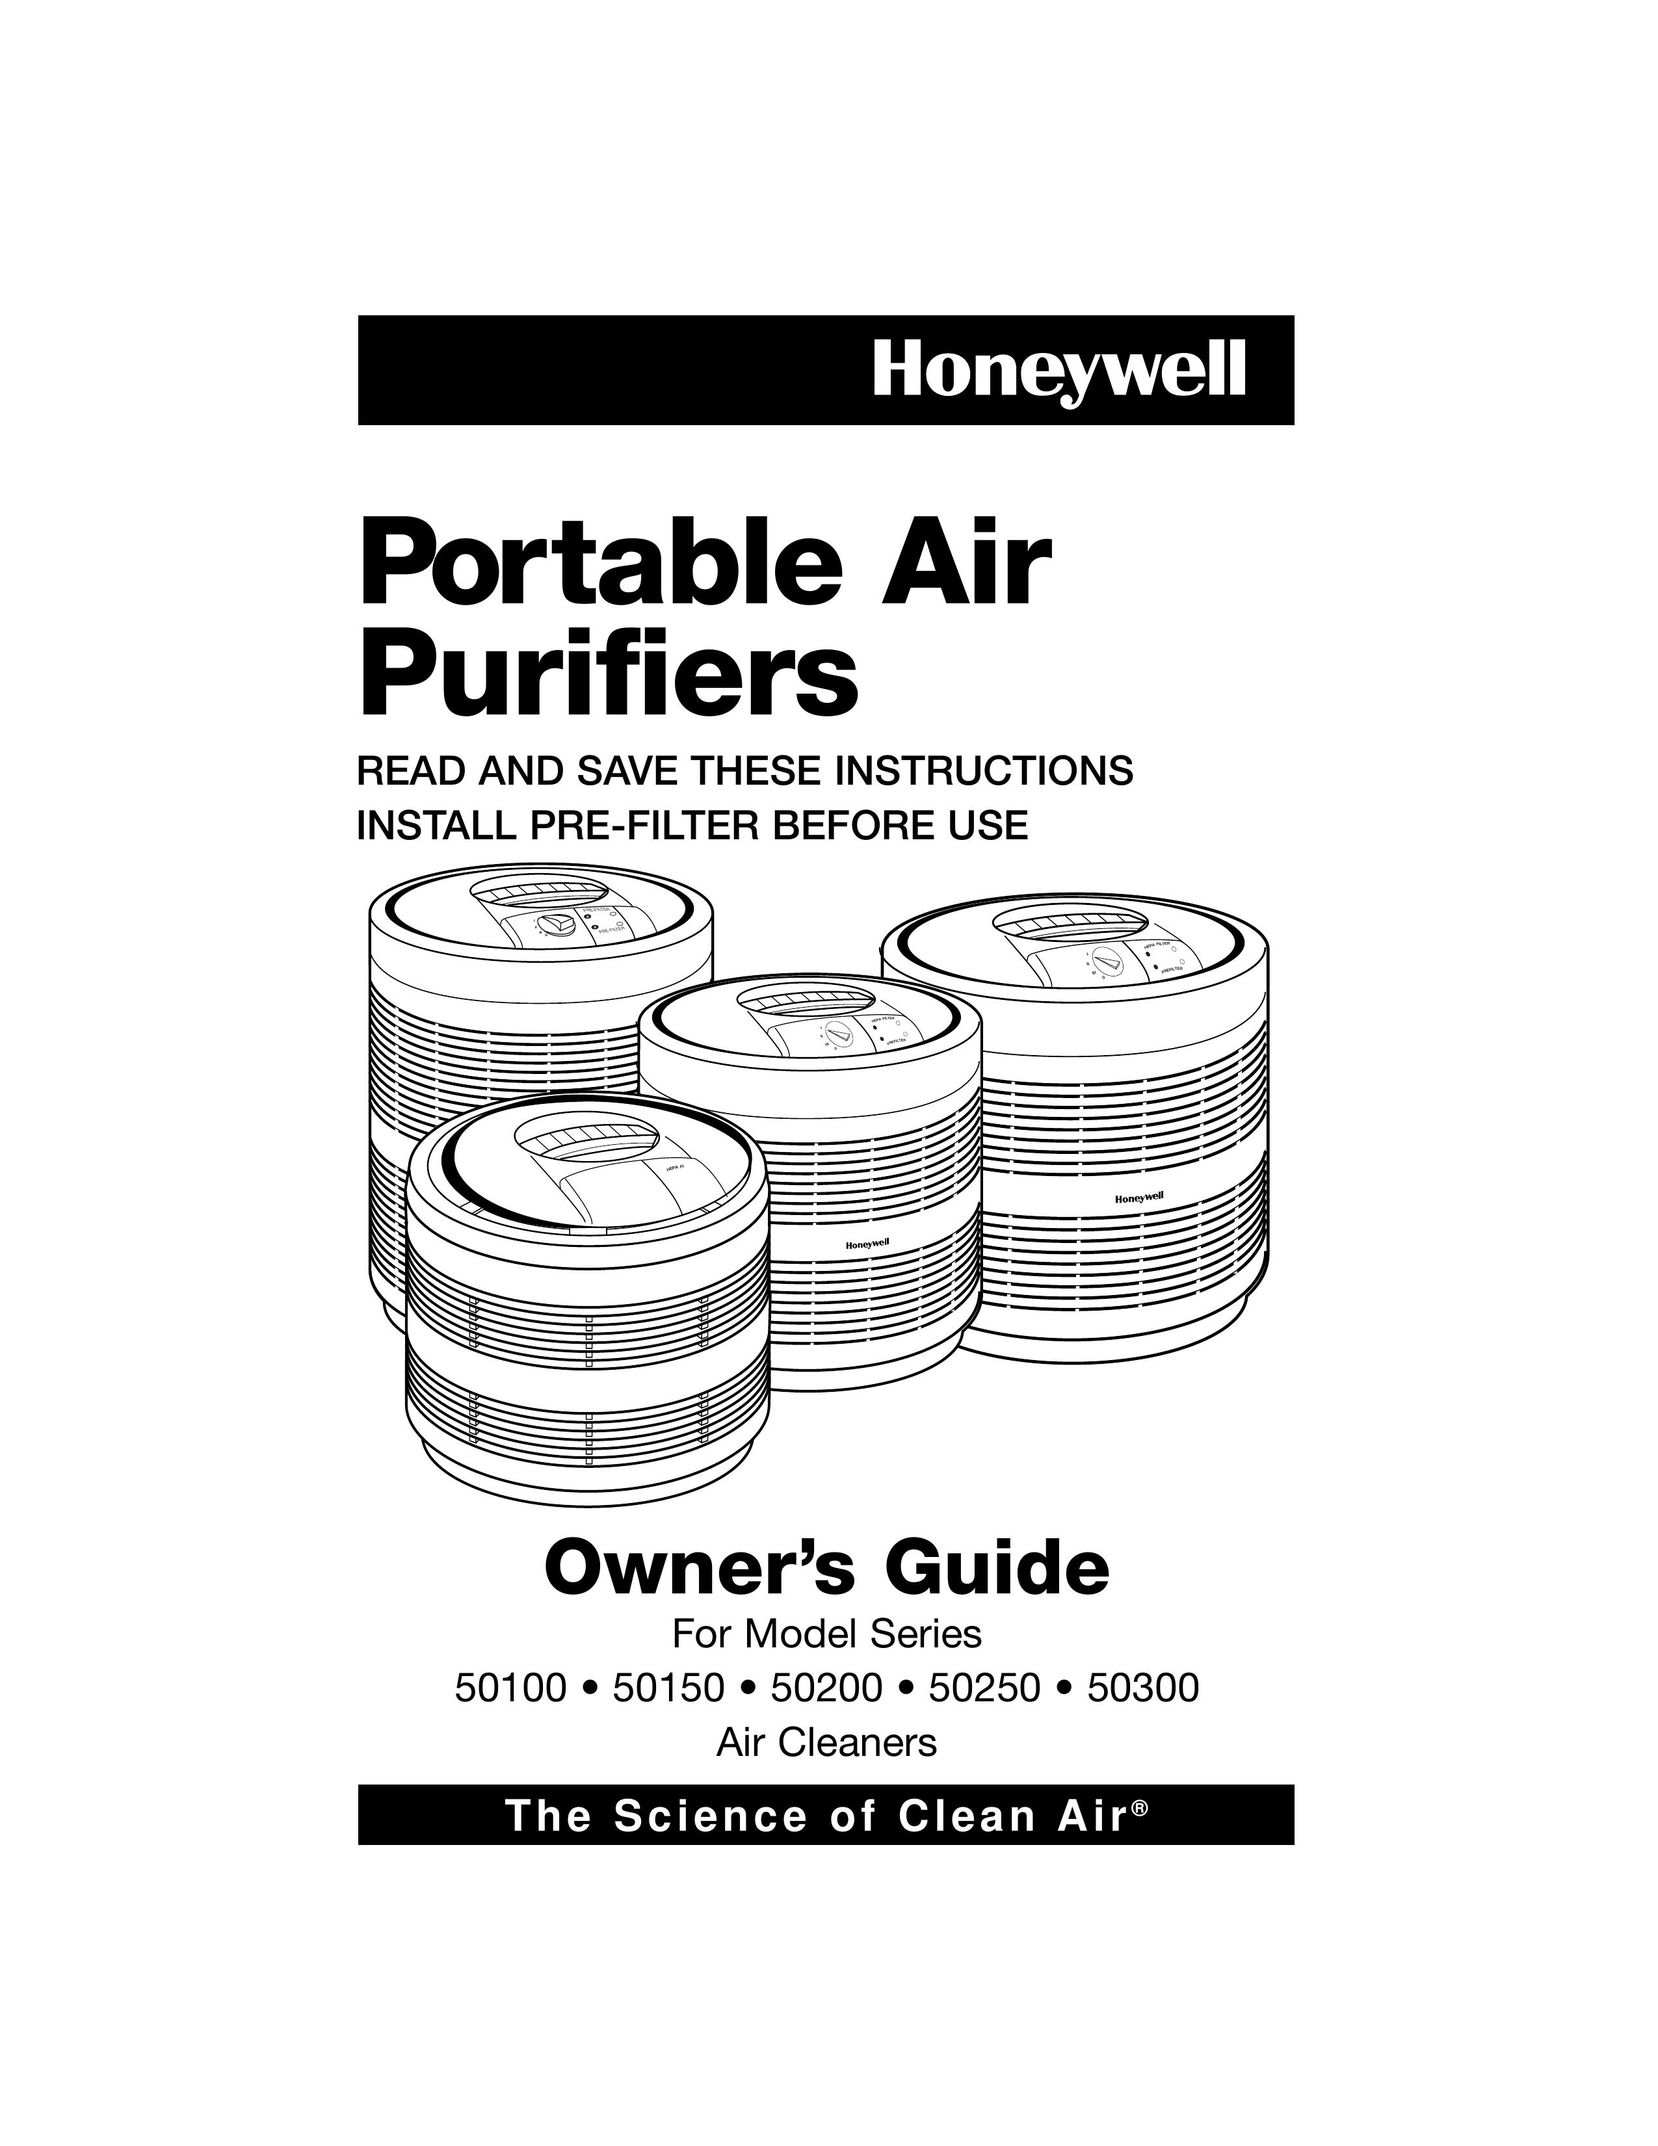 Filtera 50100 Air Cleaner User Manual